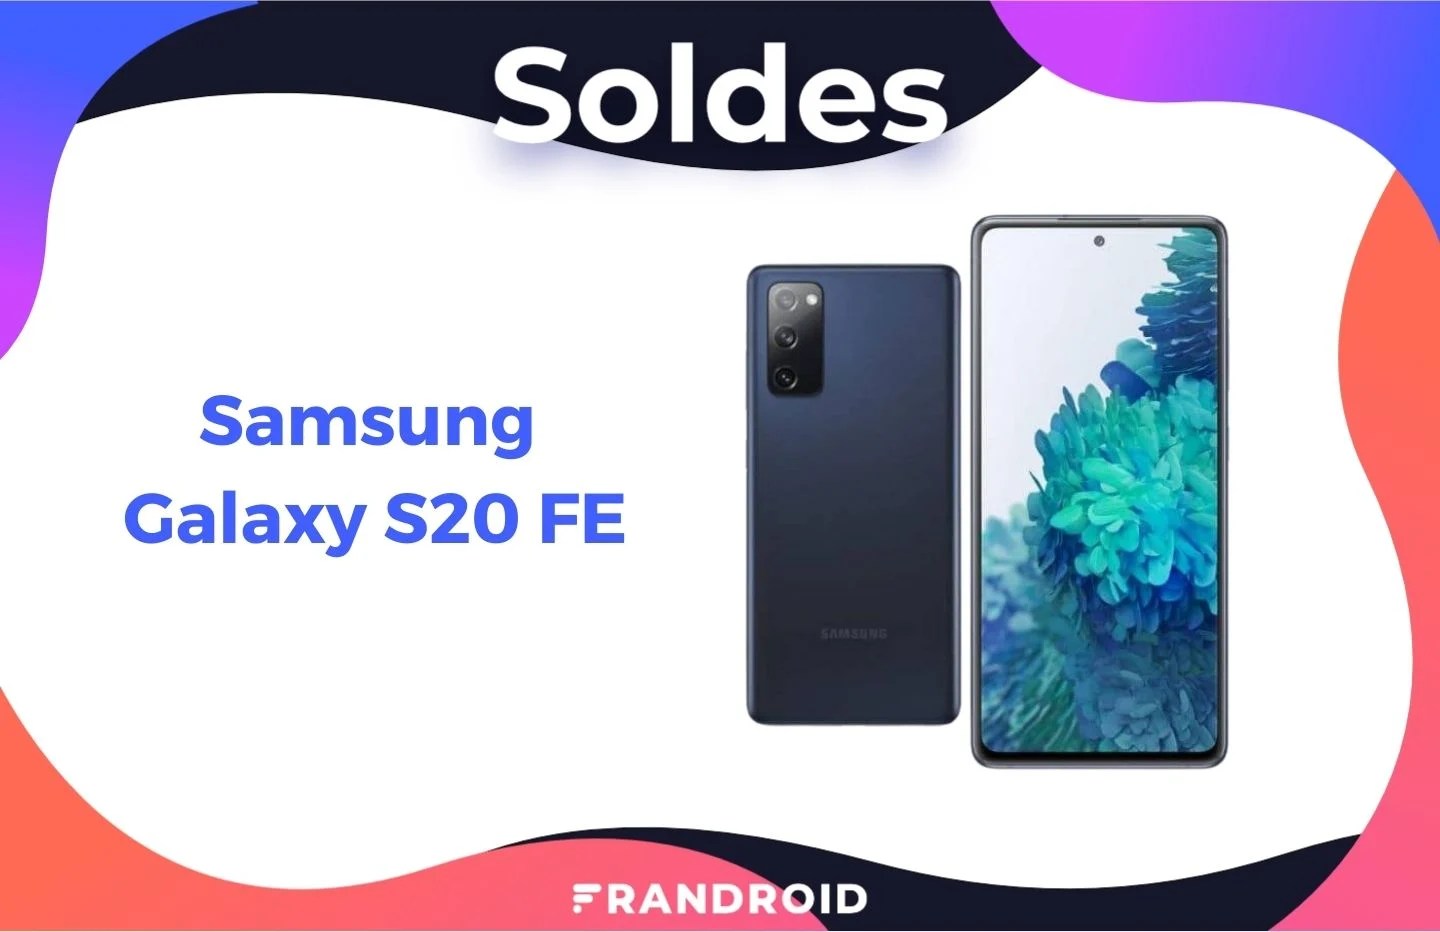 Le Samsung Galaxy S20 FE est de retour en forte promotion pour les soldes